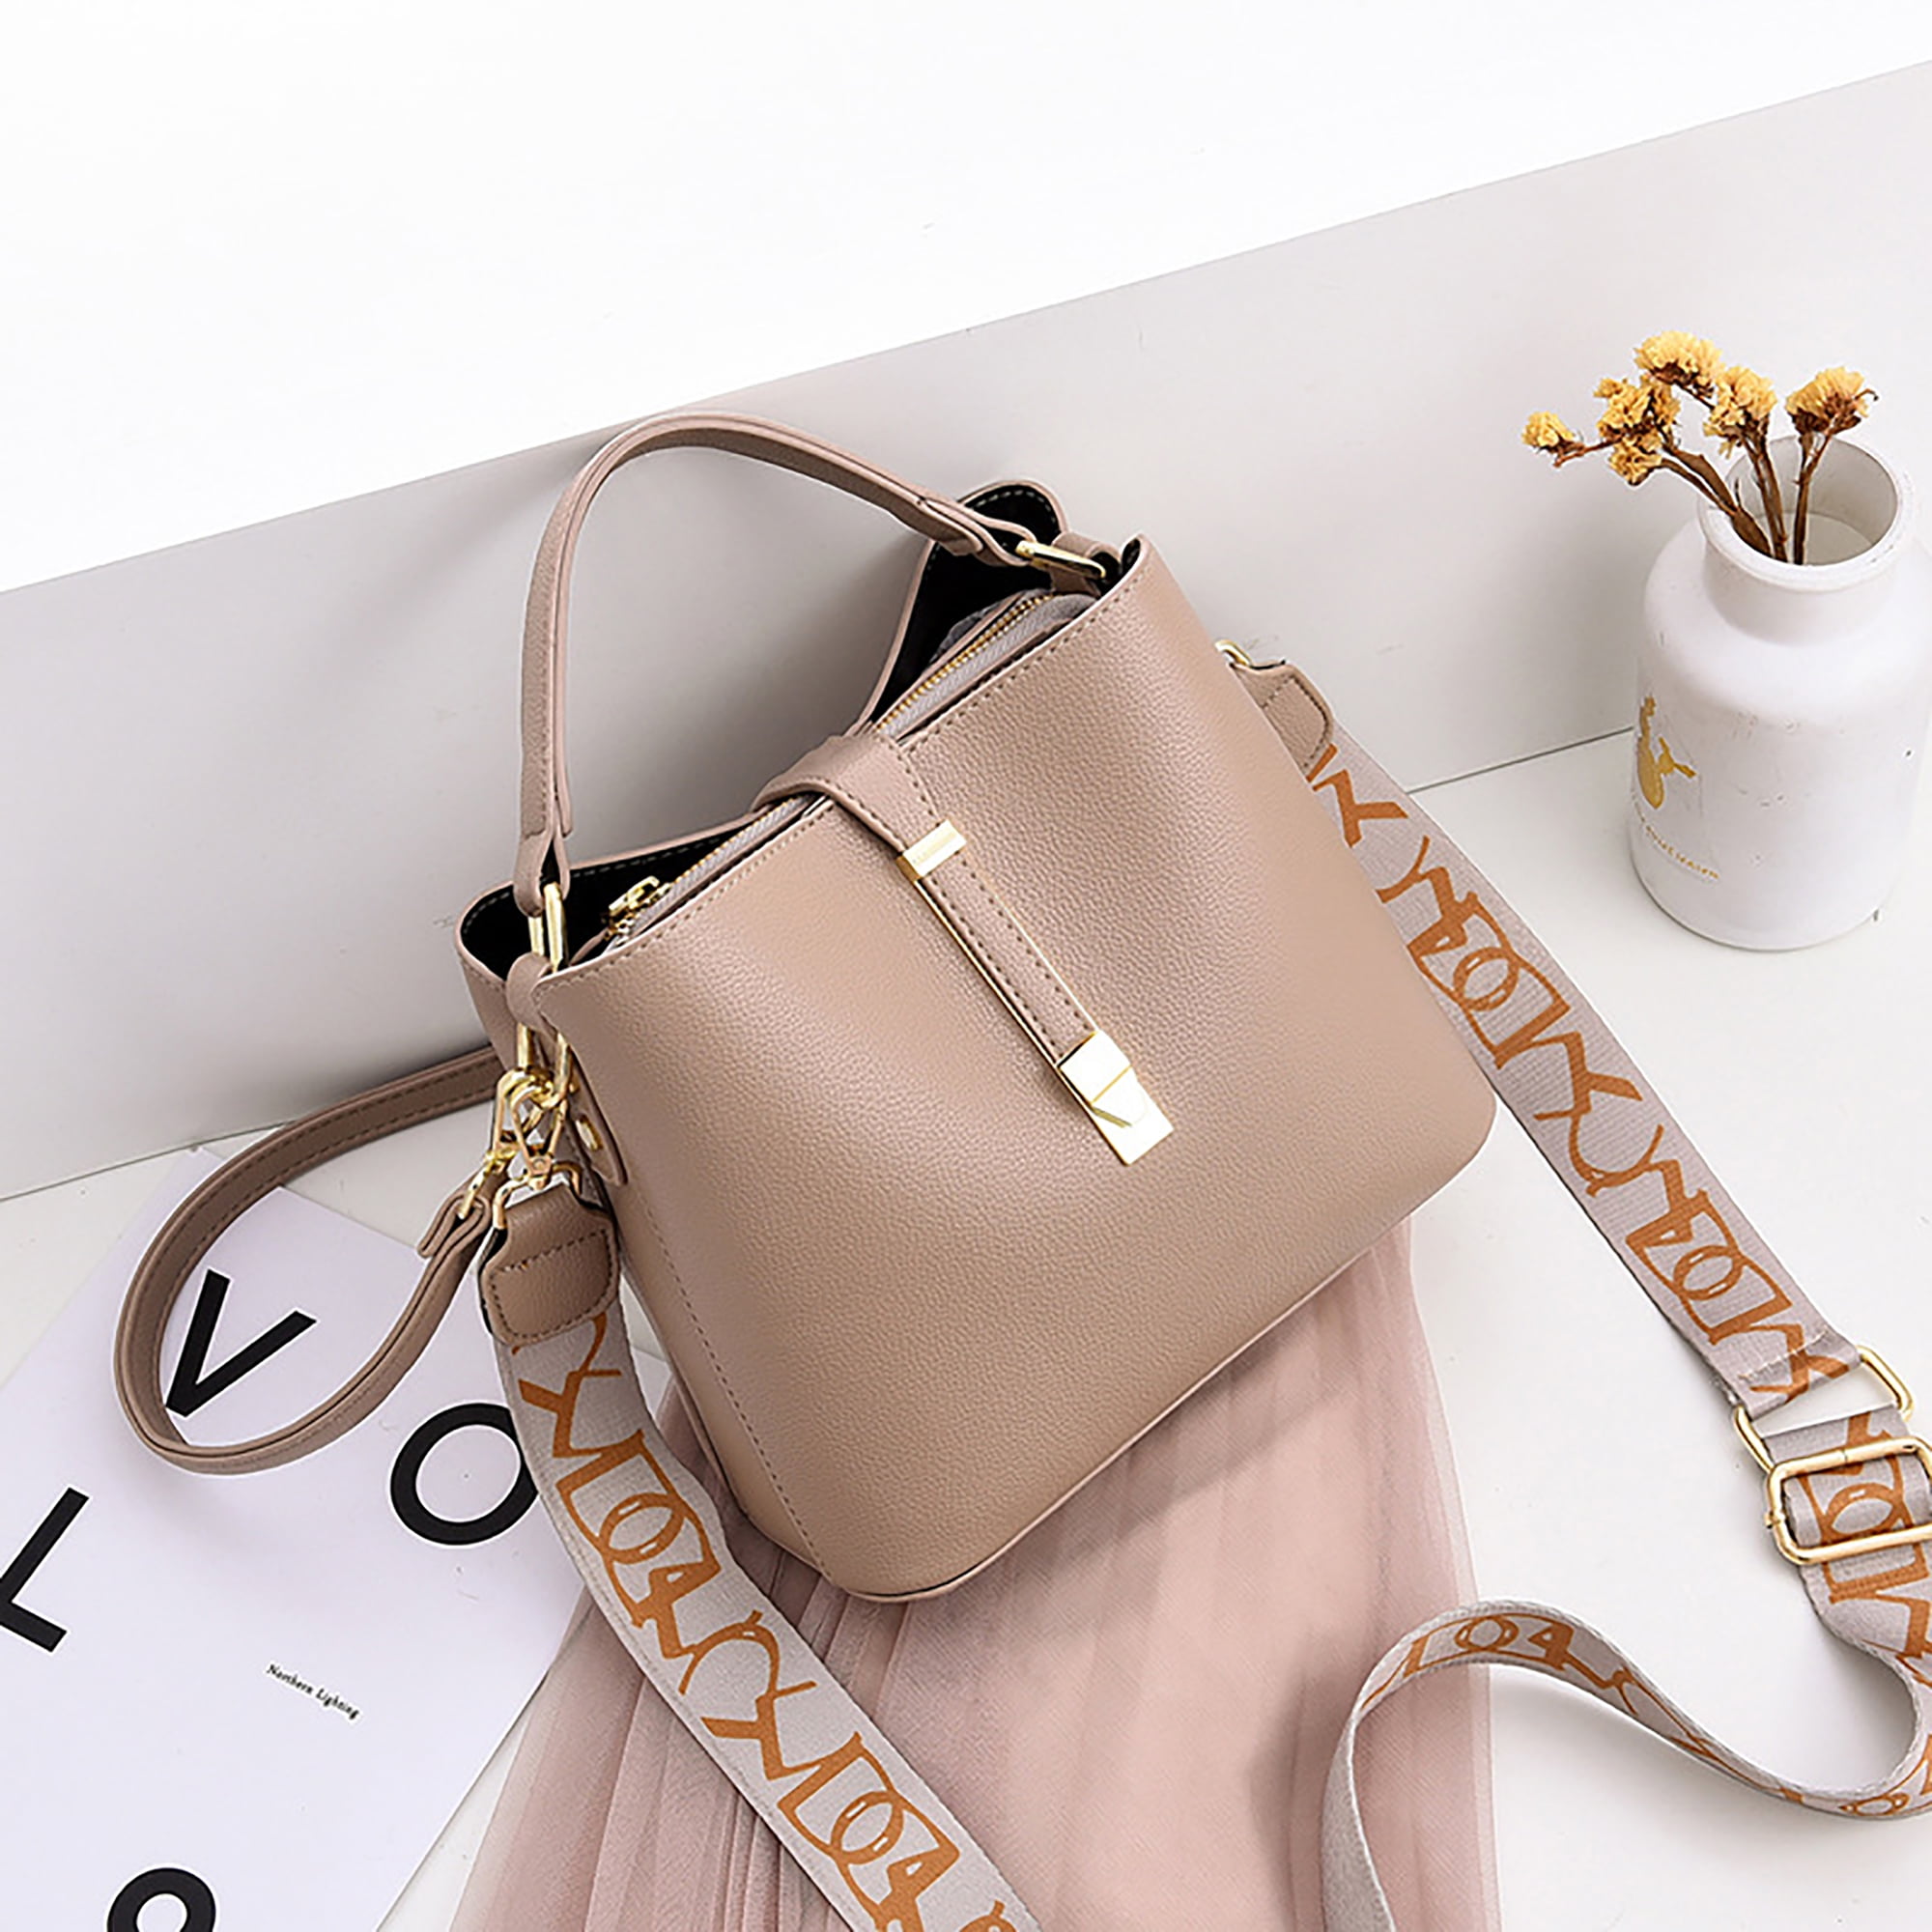 Stylish Women's Handbag Designs  Stylish handbag, Stylish handbags, Women  handbags